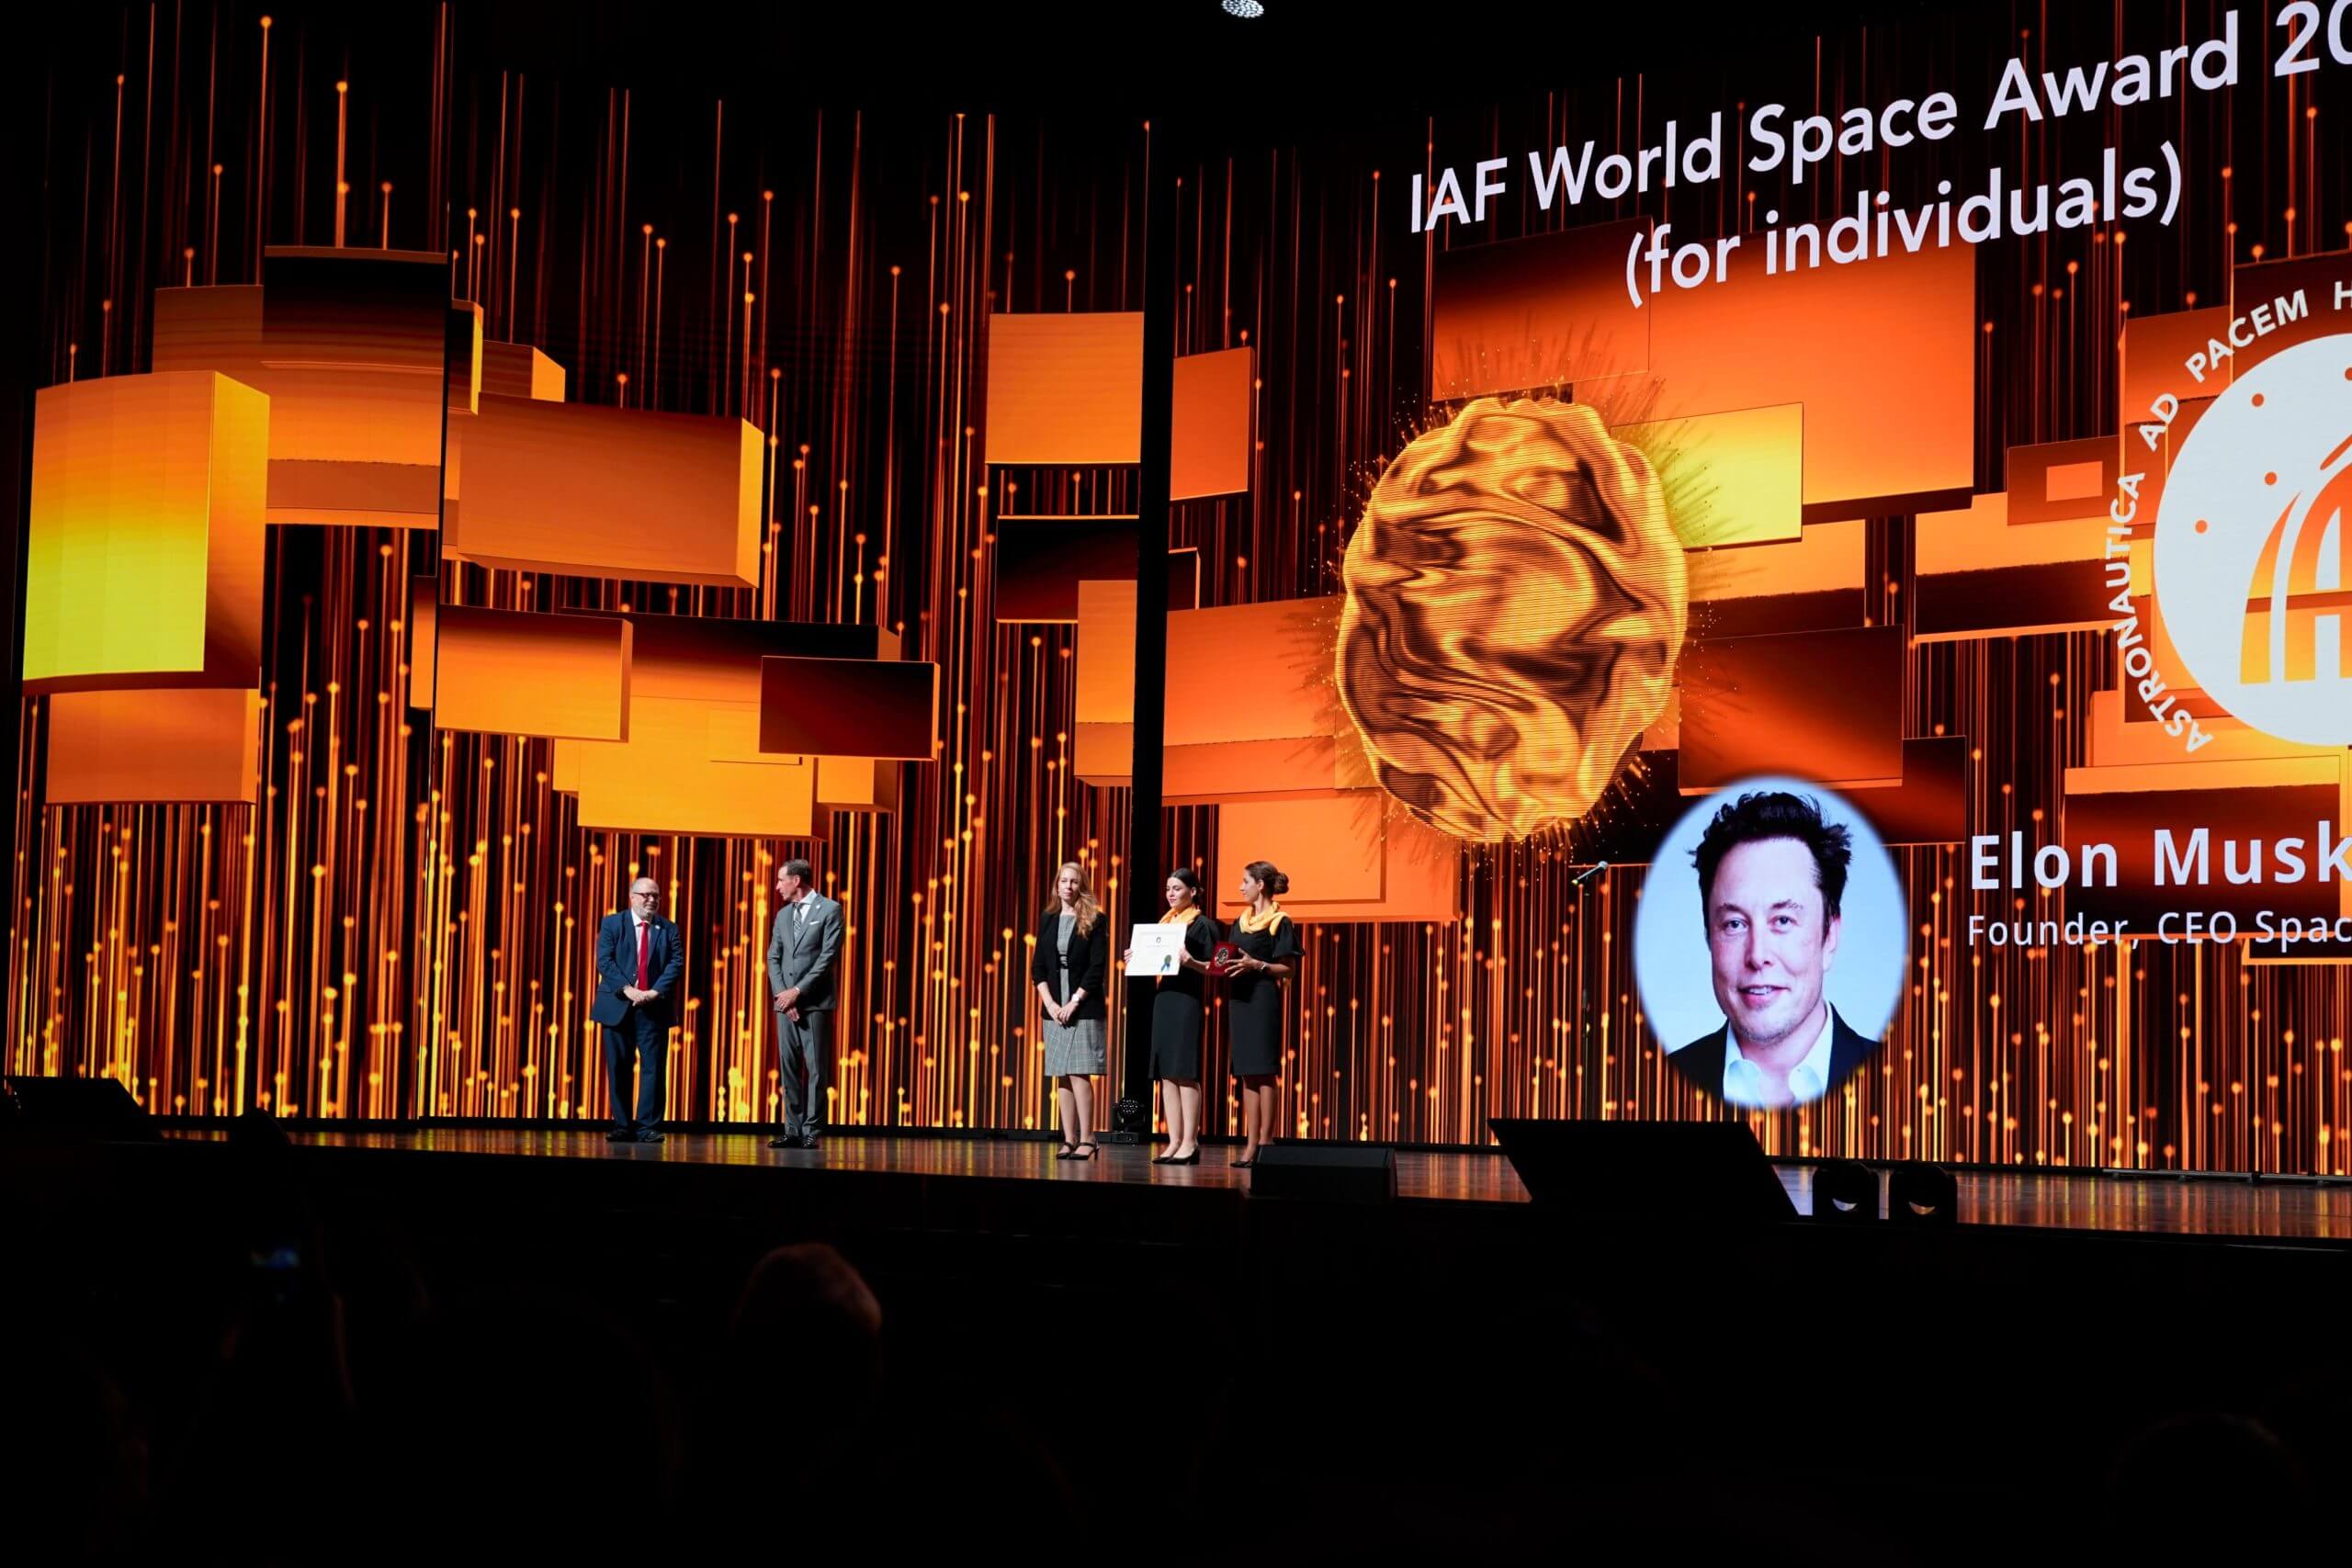 SpaceXのイーロン・マスク氏が第74回国際宇宙会議でIAF世界宇宙賞を受賞